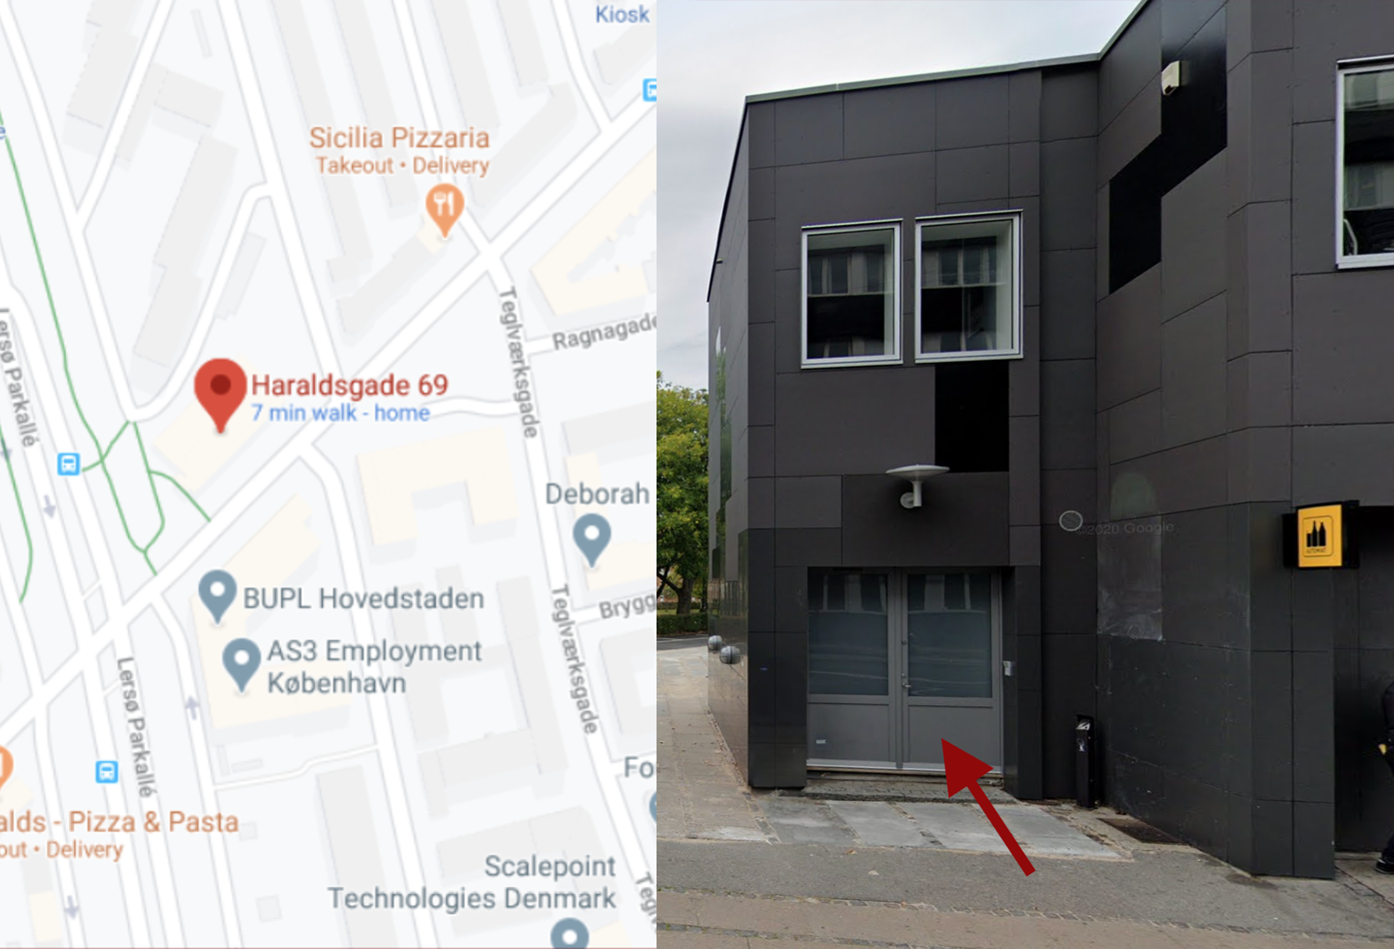 Haraldsgade 69 på Google Maps og indgang